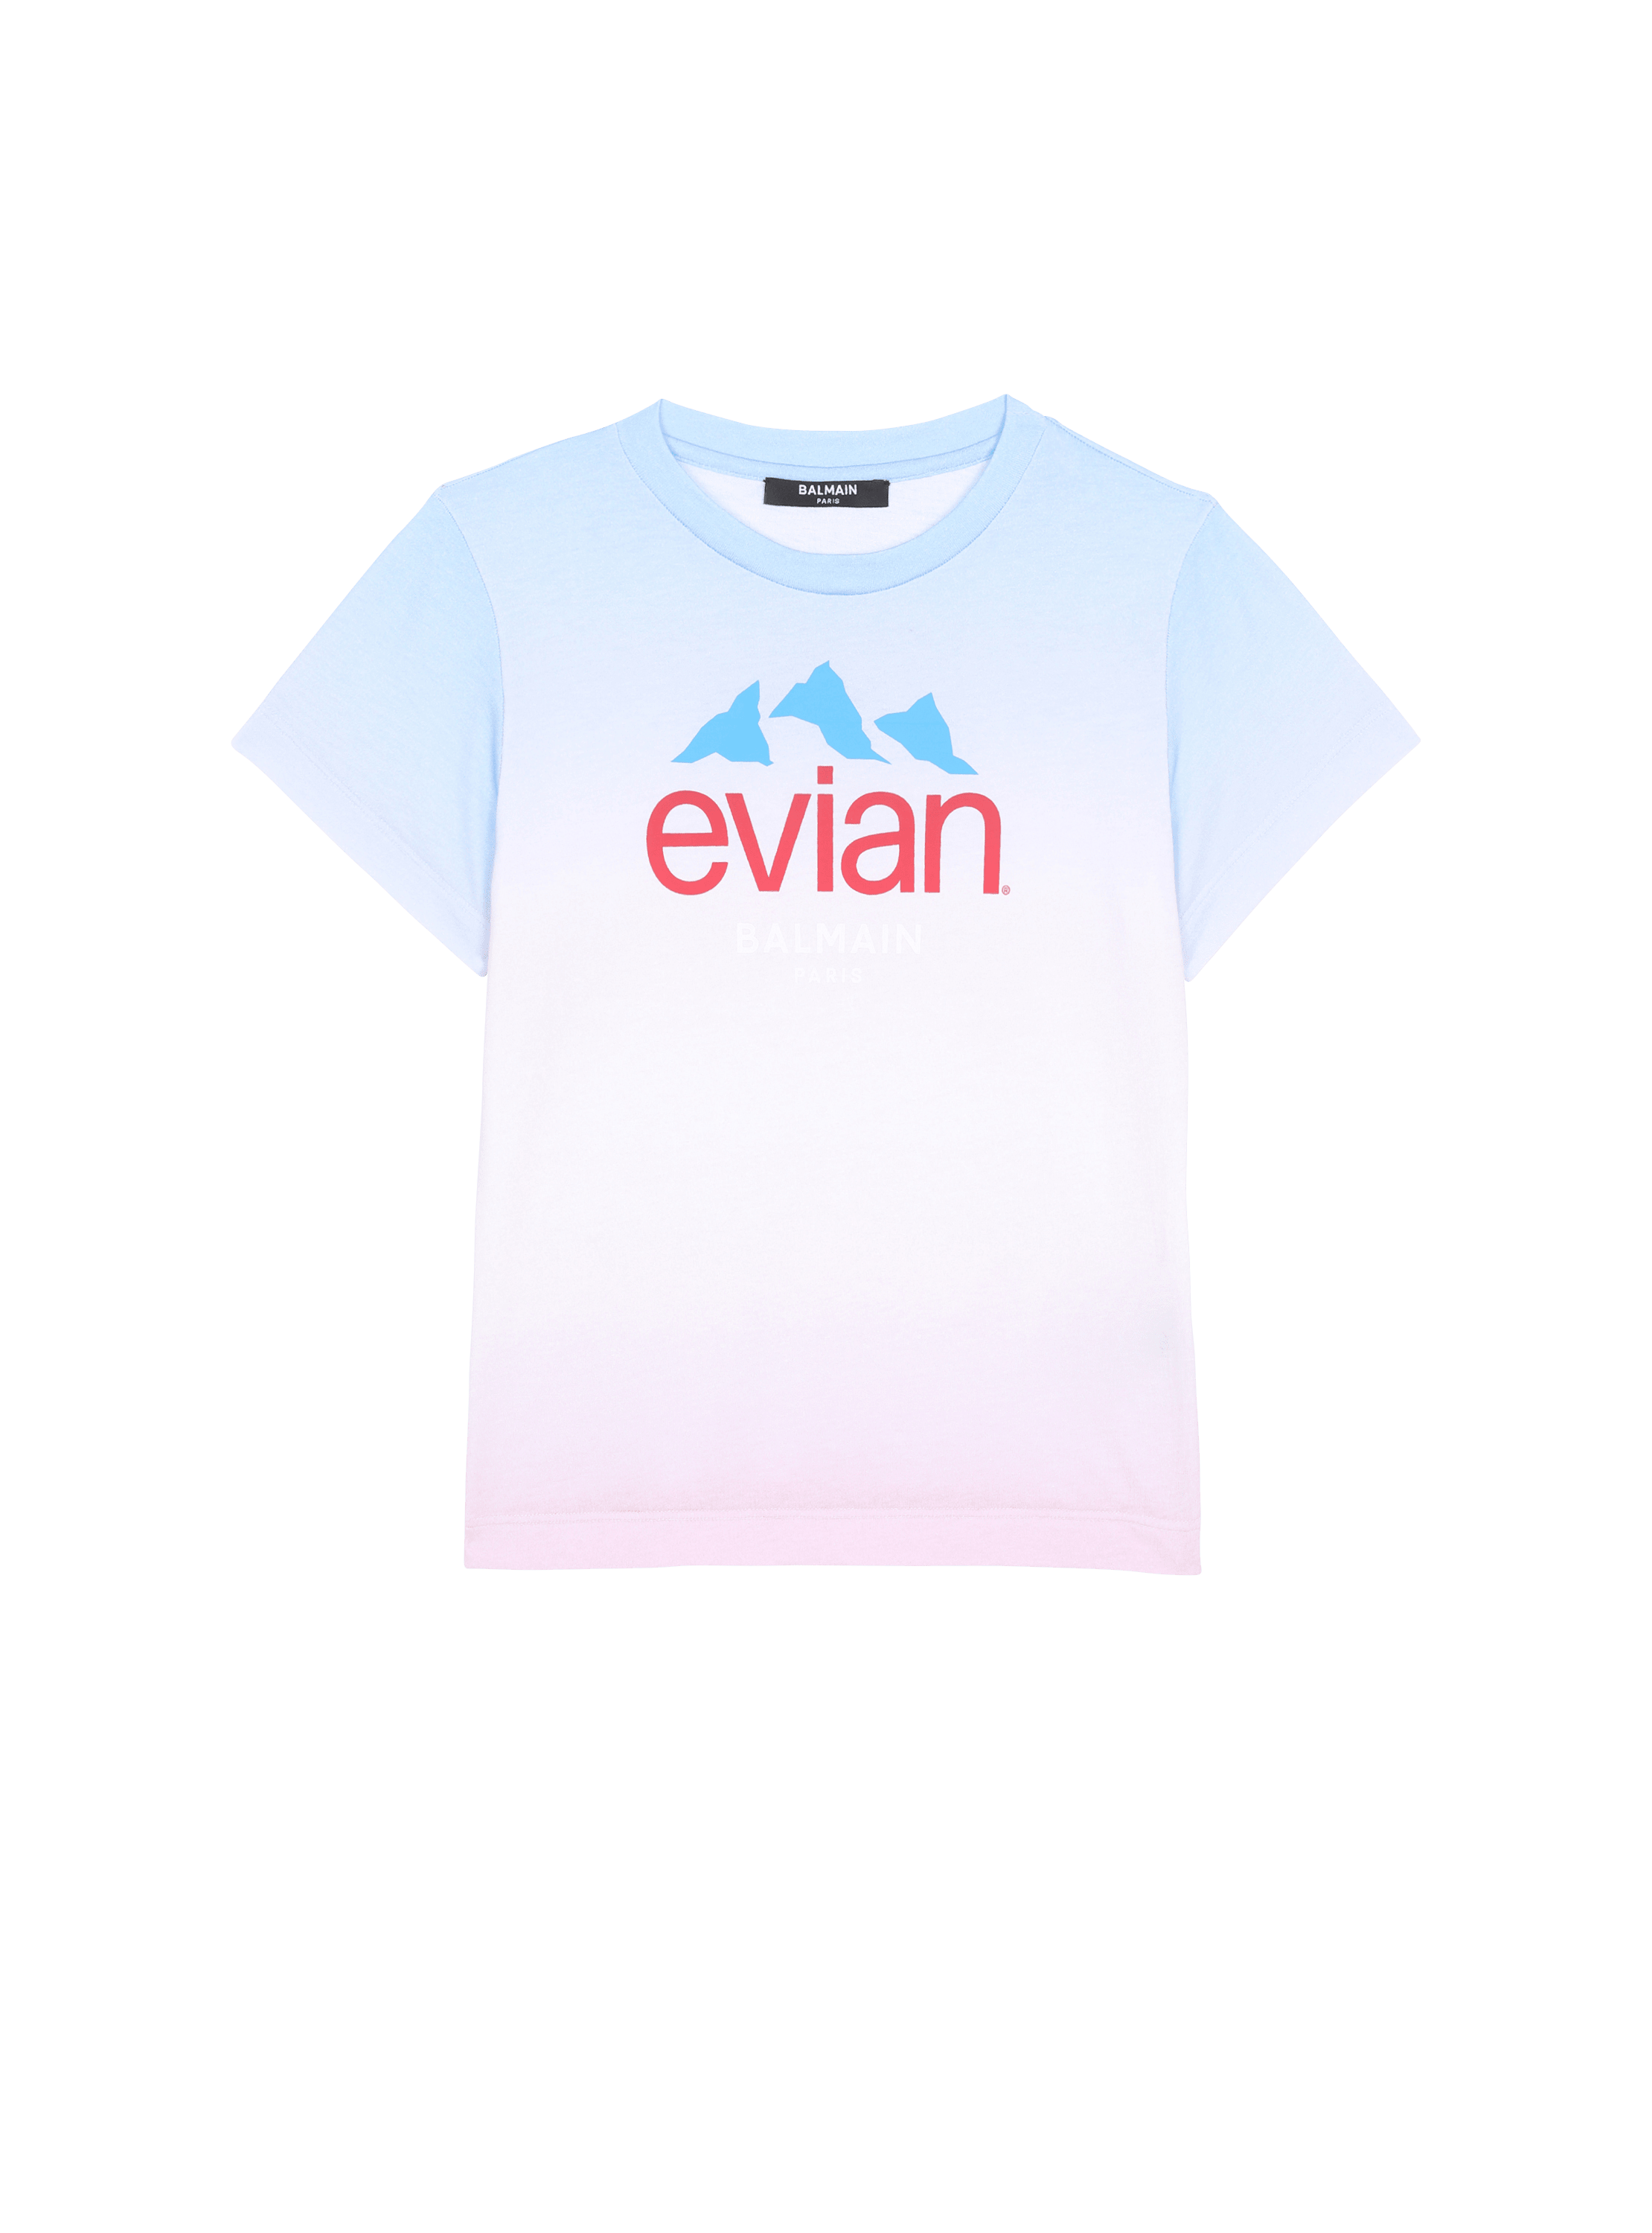 Balmain x Evian - Camiseta con degradado